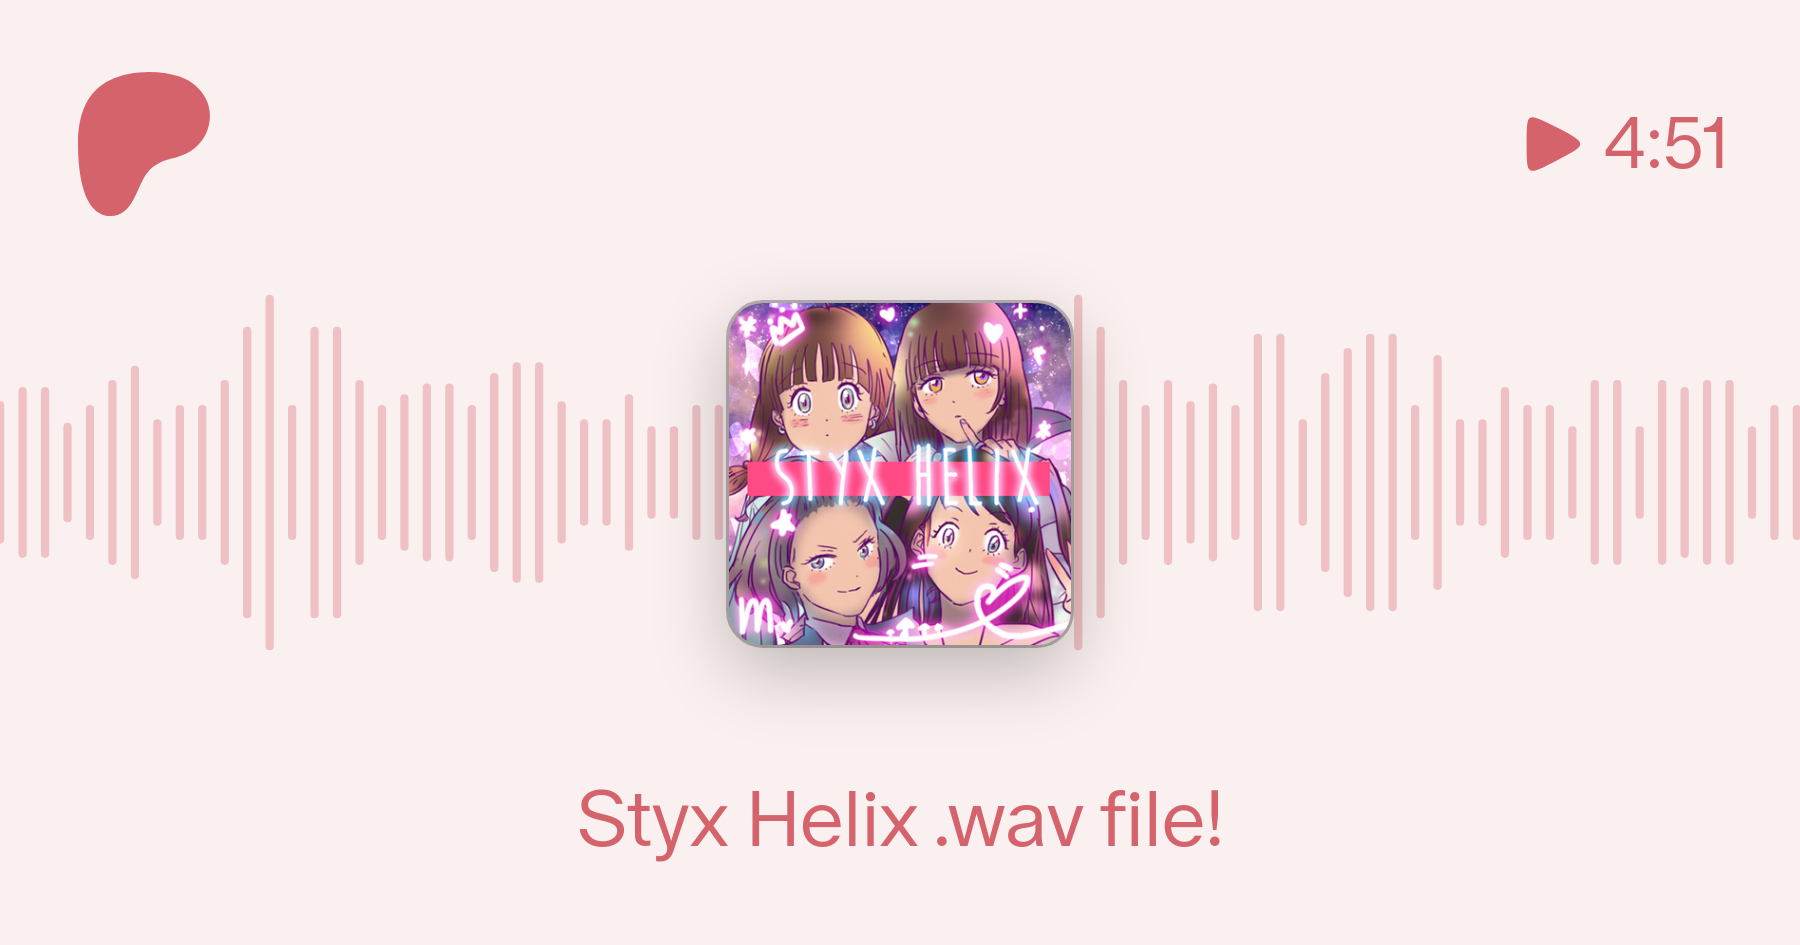 Styx Helix Wav File Enn Sings On Patreon